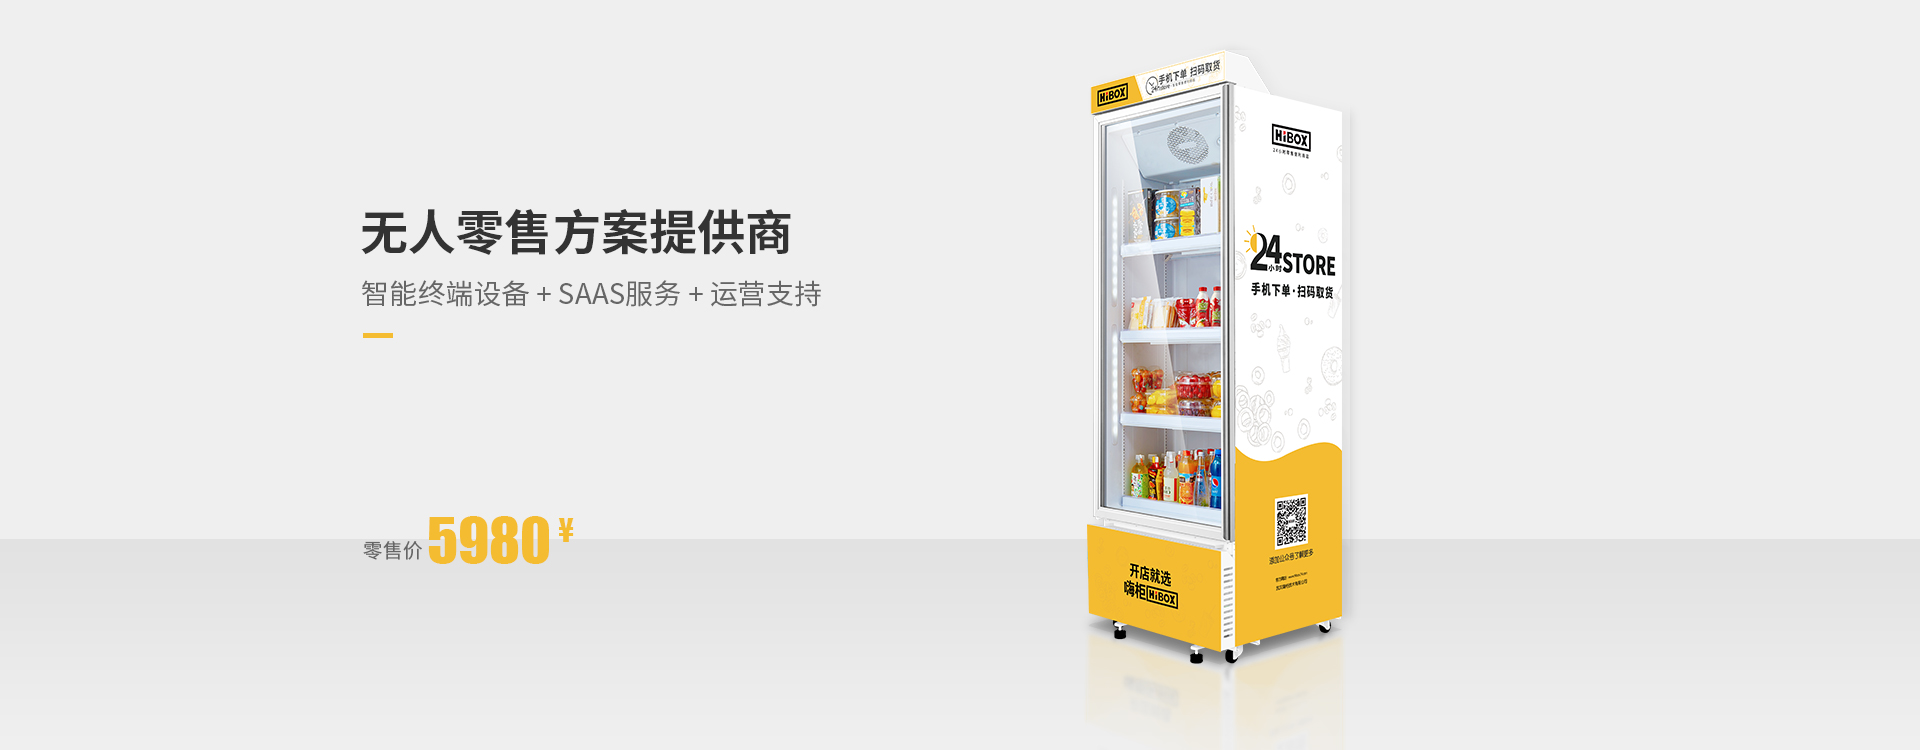 HIBOX嗨柜是一家人工智能零售方案提供商